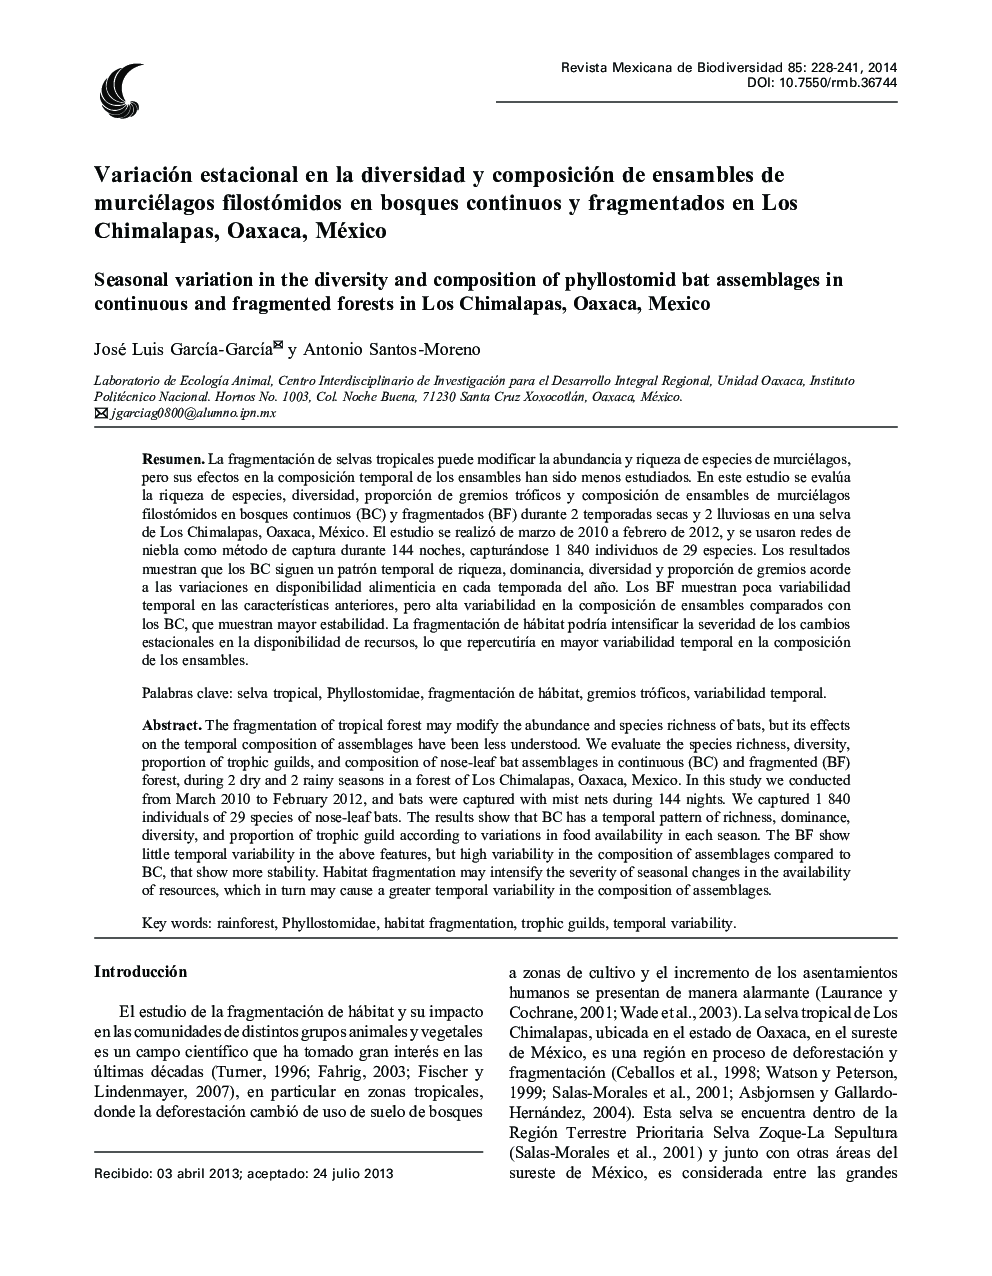 Variación estacional en la diversidad y composición de ensambles de murciélagos filostómidos en bosques continuos y fragmentados en Los Chimalapas, Oaxaca, México